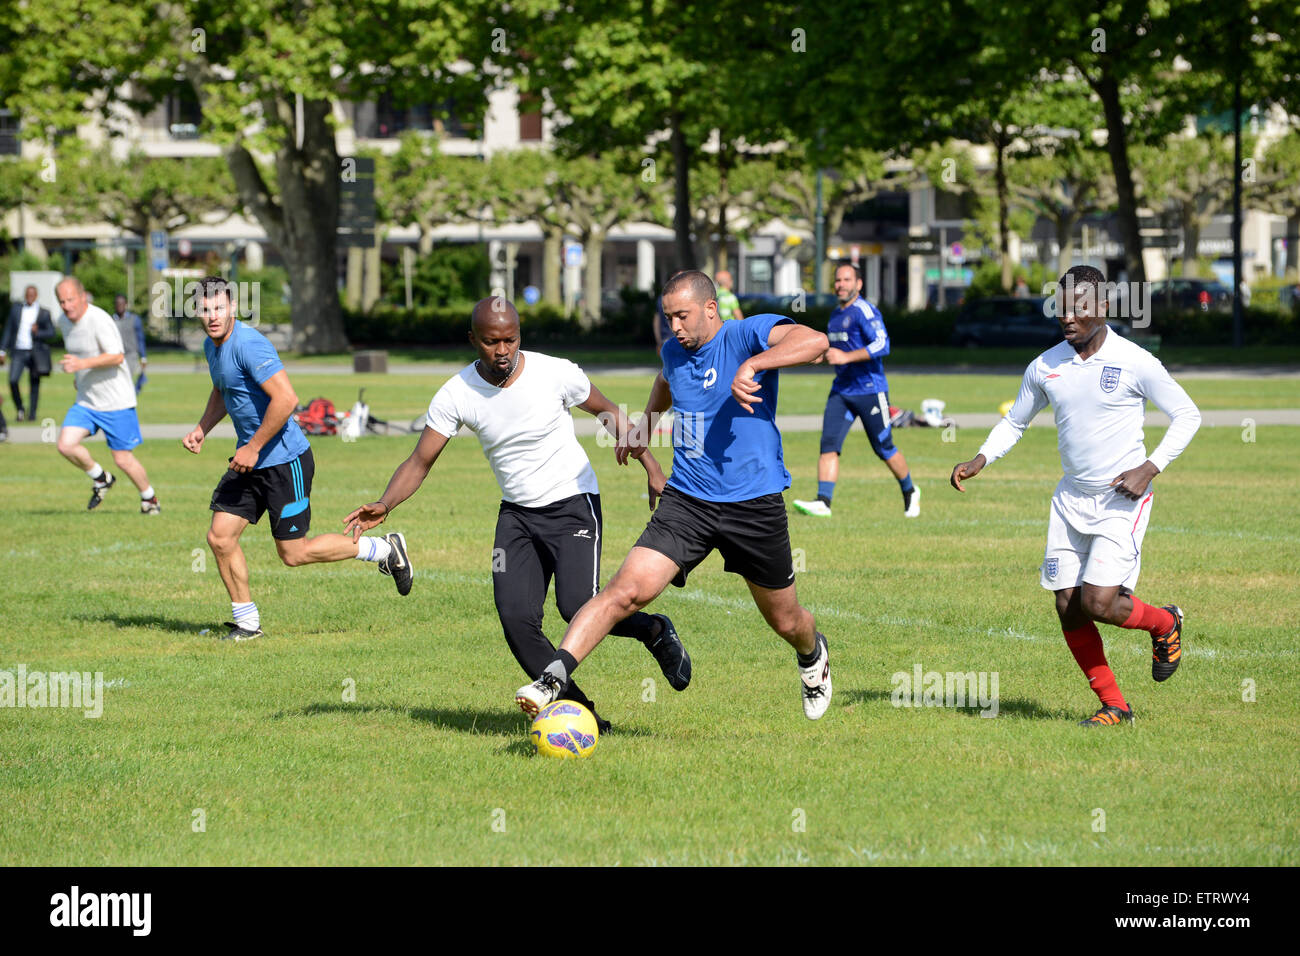 Giocatori dilettanti di calcio uomini di tutte le età giocano una partita improvvisata al parco pubblico di Annecy in Francia. Uomini che giocano a calcio nel parco Foto Stock